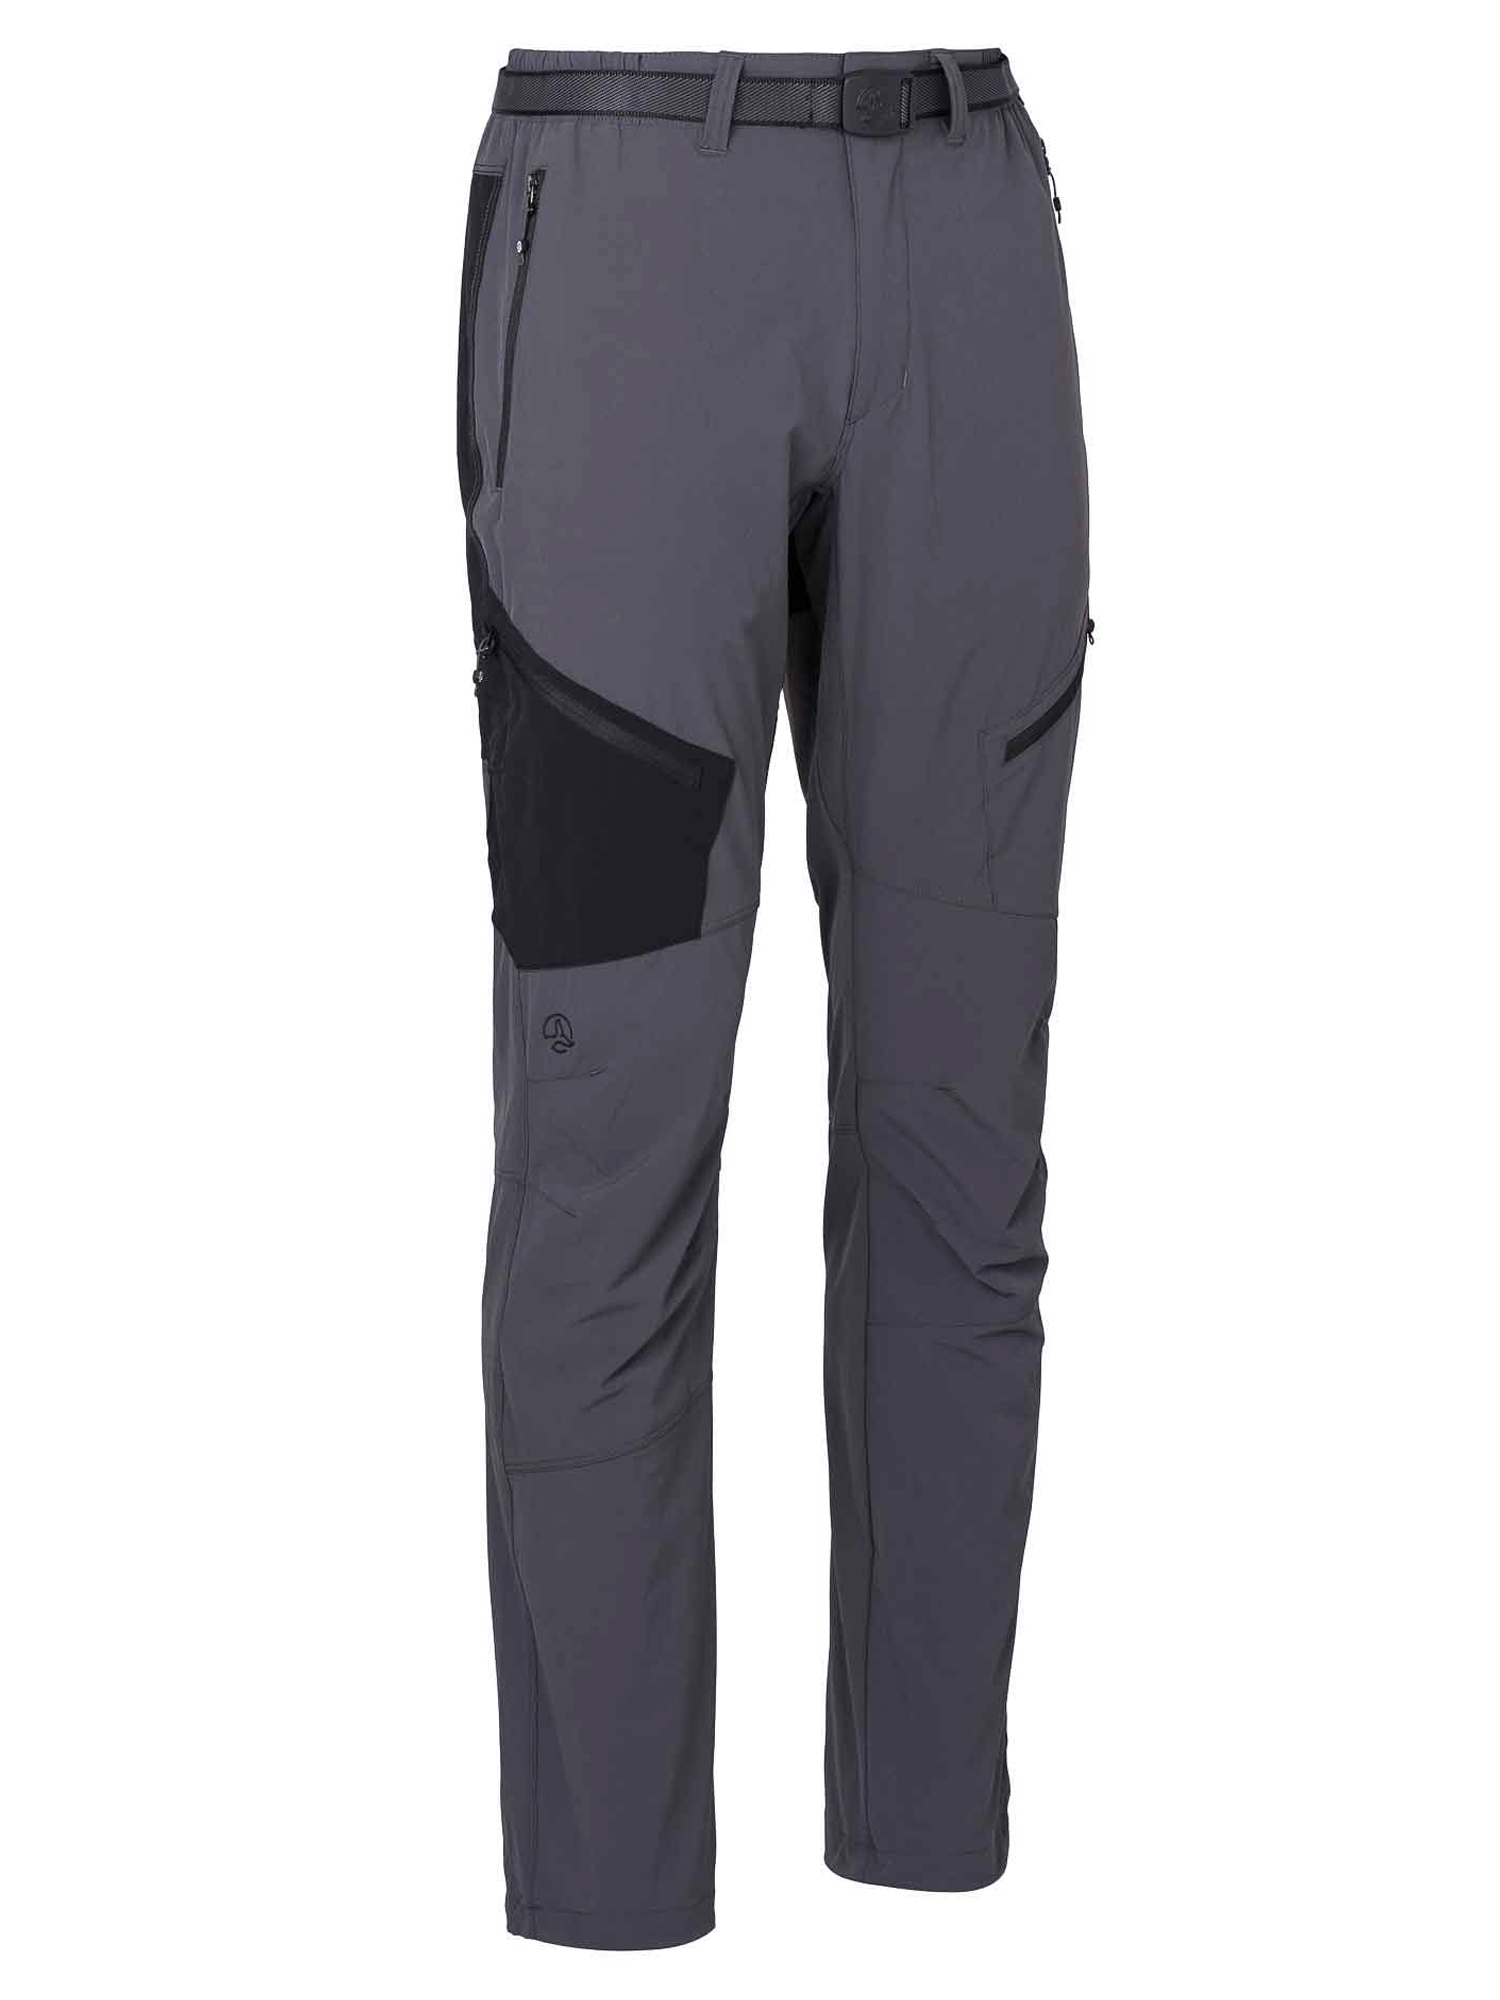 Спортивные брюки мужские Ternua Torlok Pt M серые XL